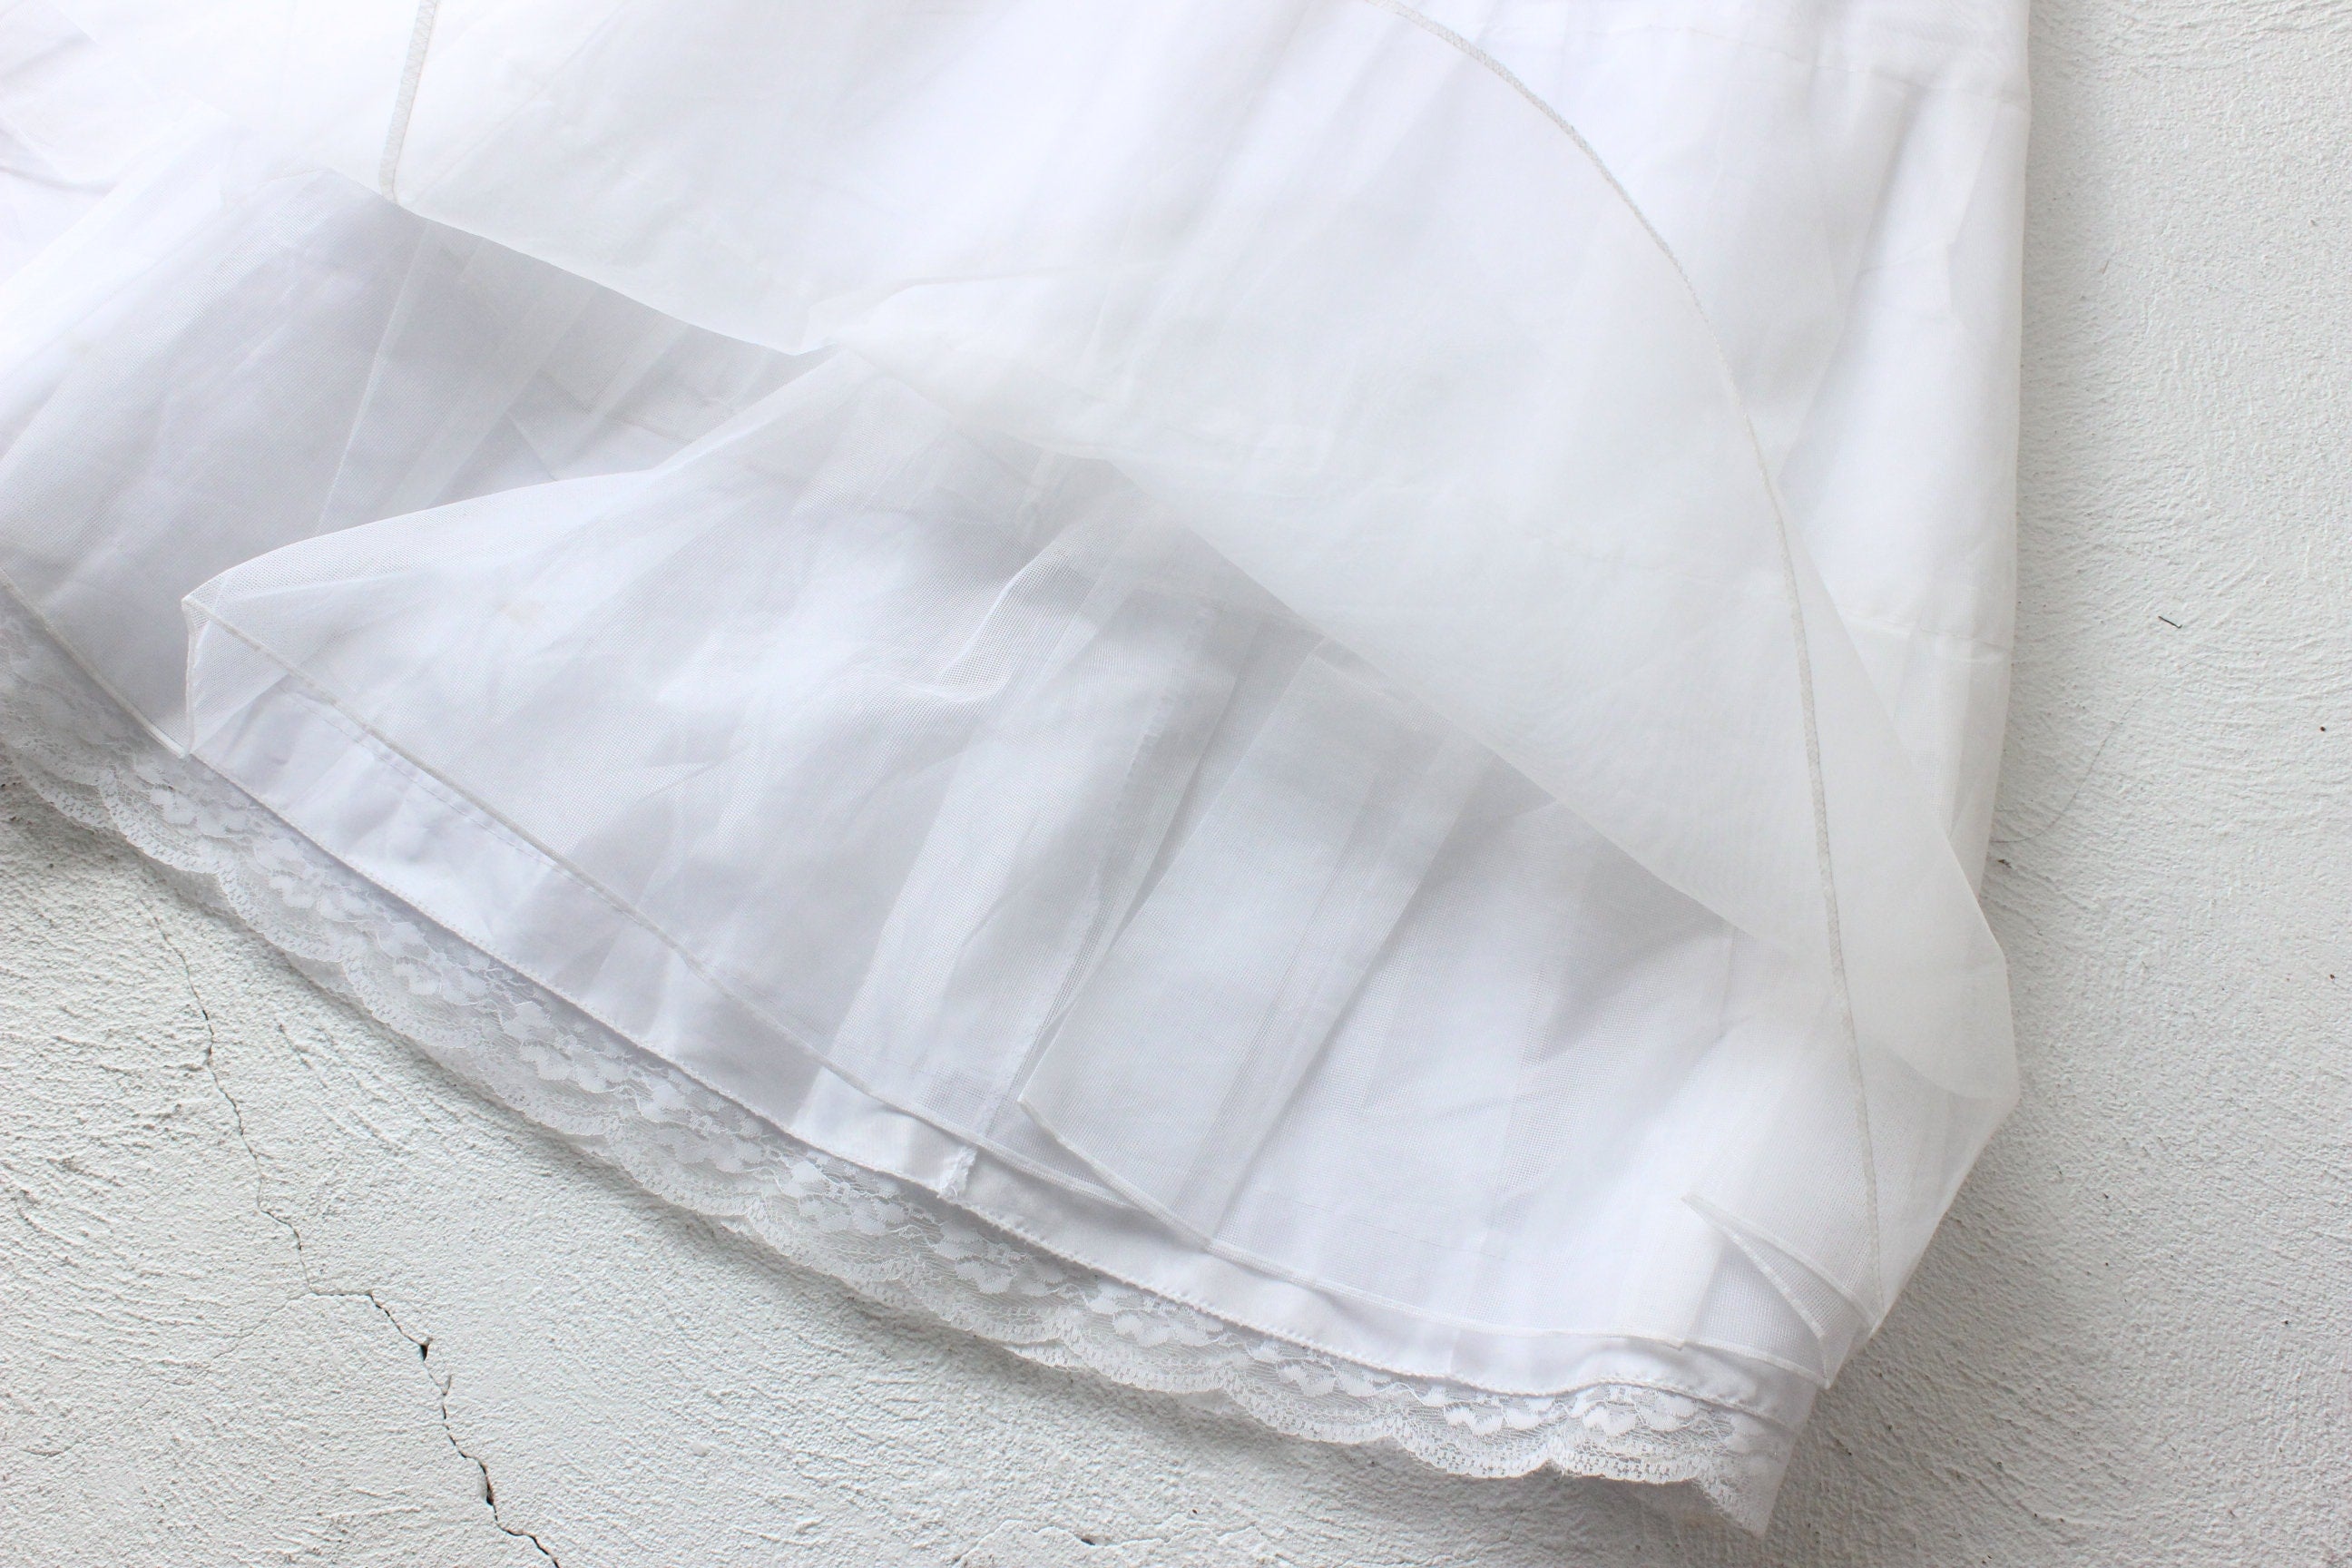 Voluminous Korean Layered Petticoat Dress